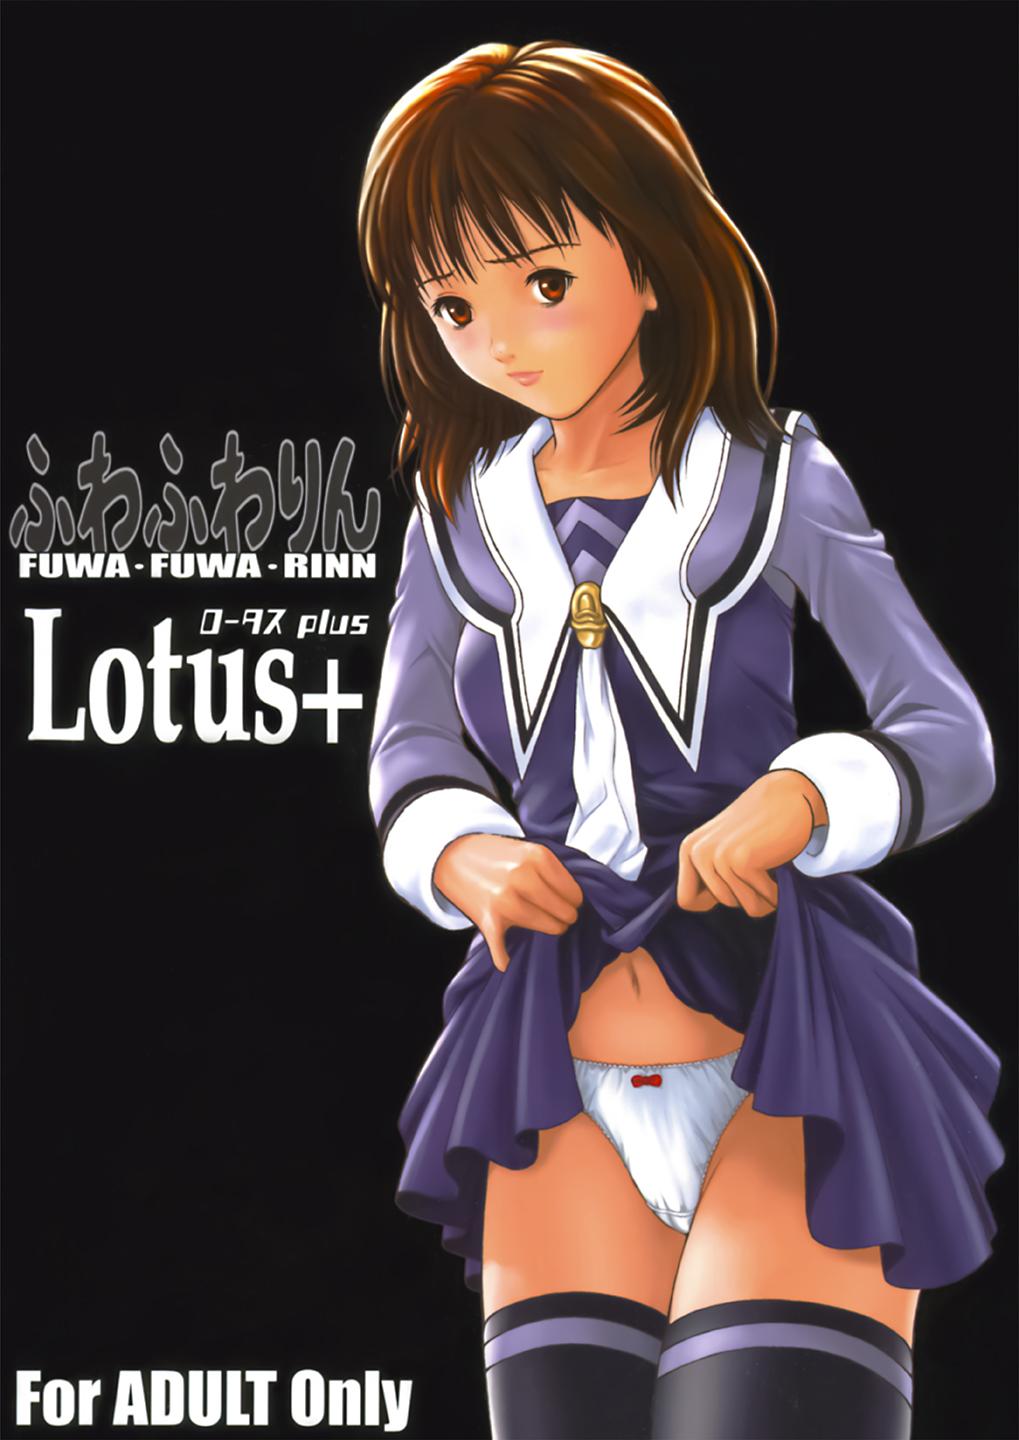 Fuwafuwarin Lotus+ 0